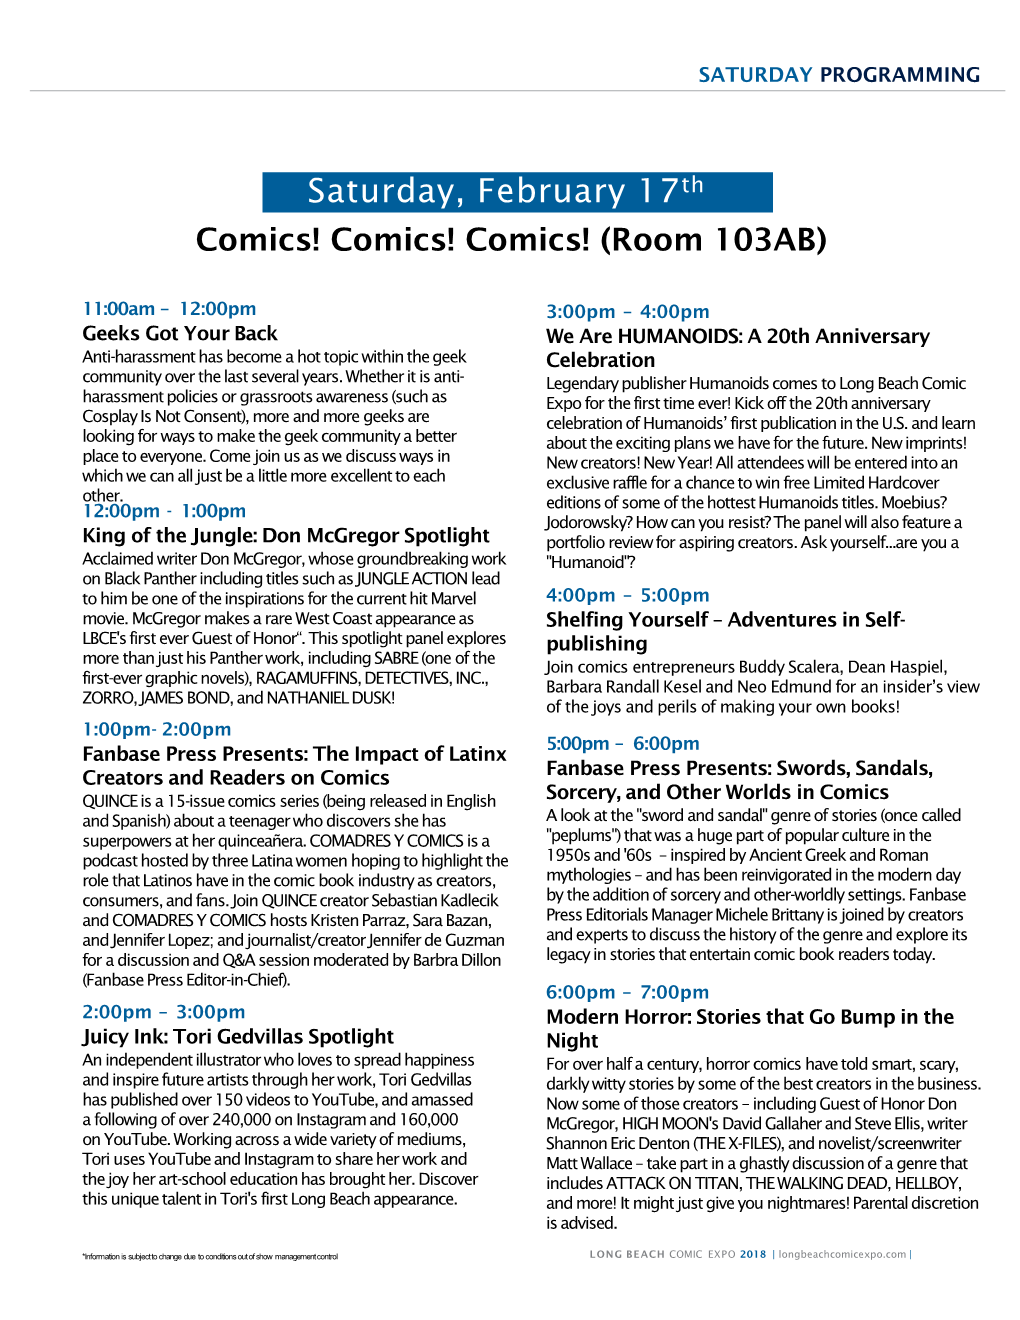 Saturday, February 17Th Comics! Comics! Comics! (Room 103AB)